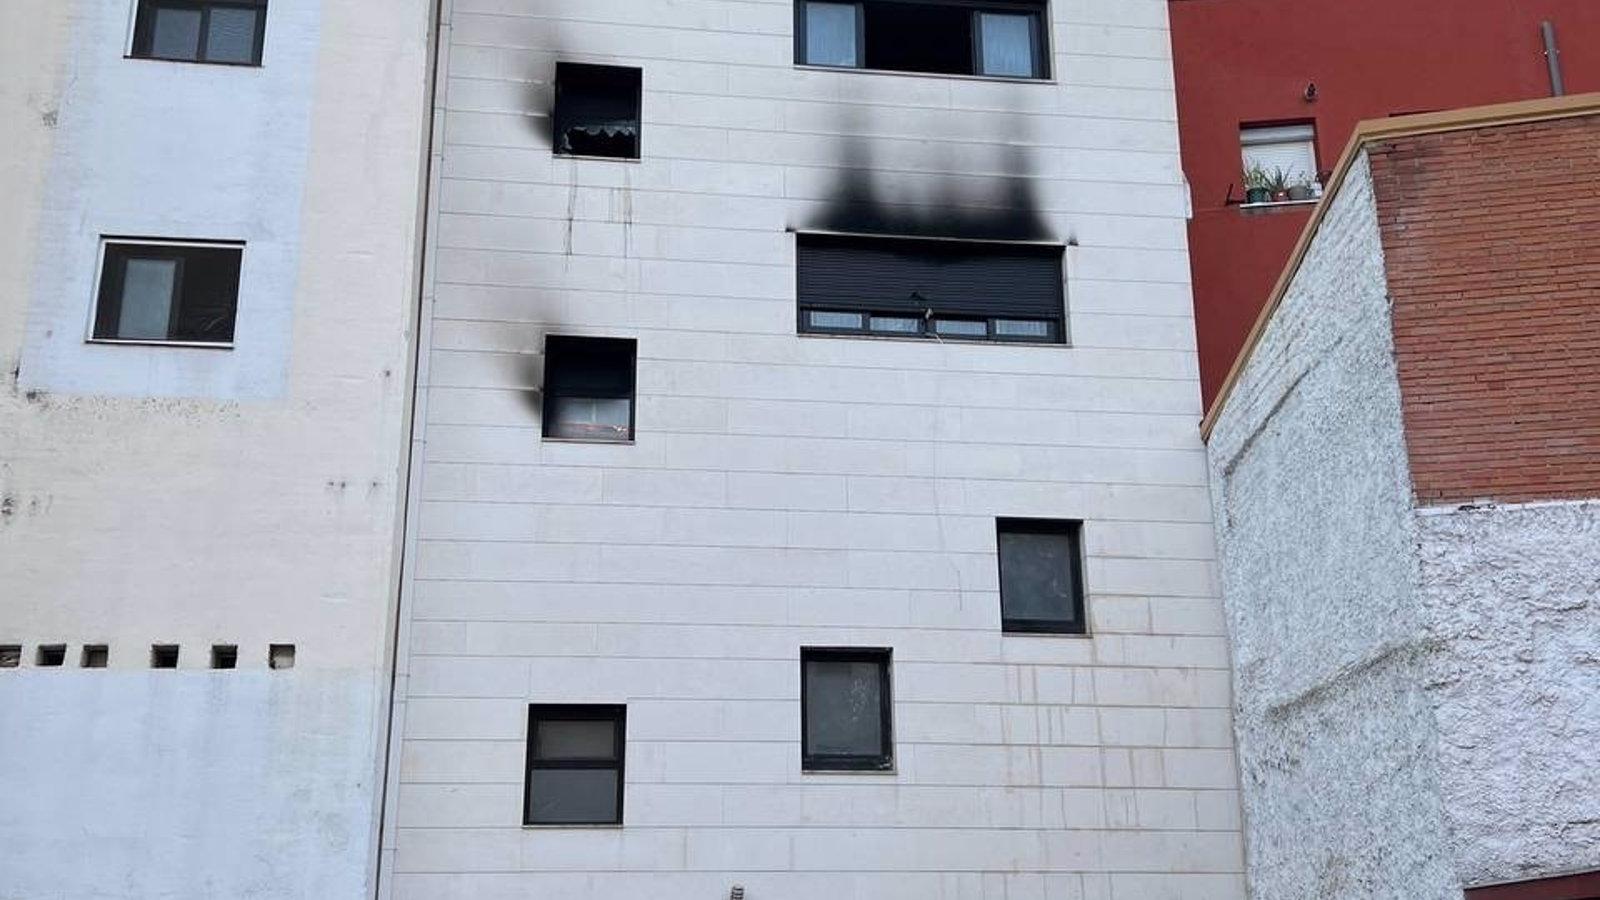  Un equipo de Sareb revisa el edificio incendiado en Villalba, que ha quedado 'muy dañado' por el fuego